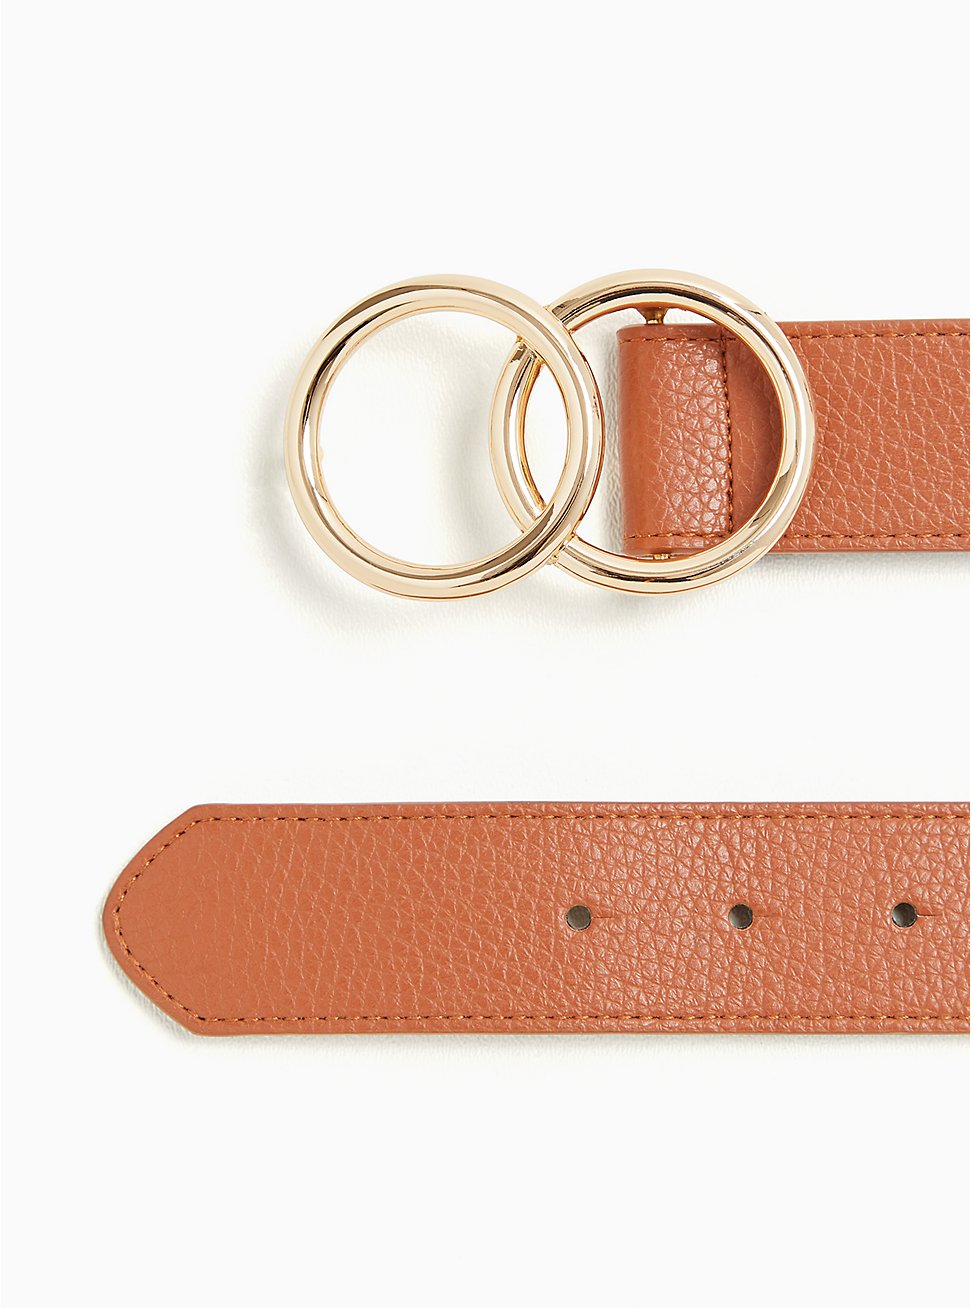 Plus Size Dual Ring Buckle Belt - Faux Leather Cognac, BROWN, hi-res